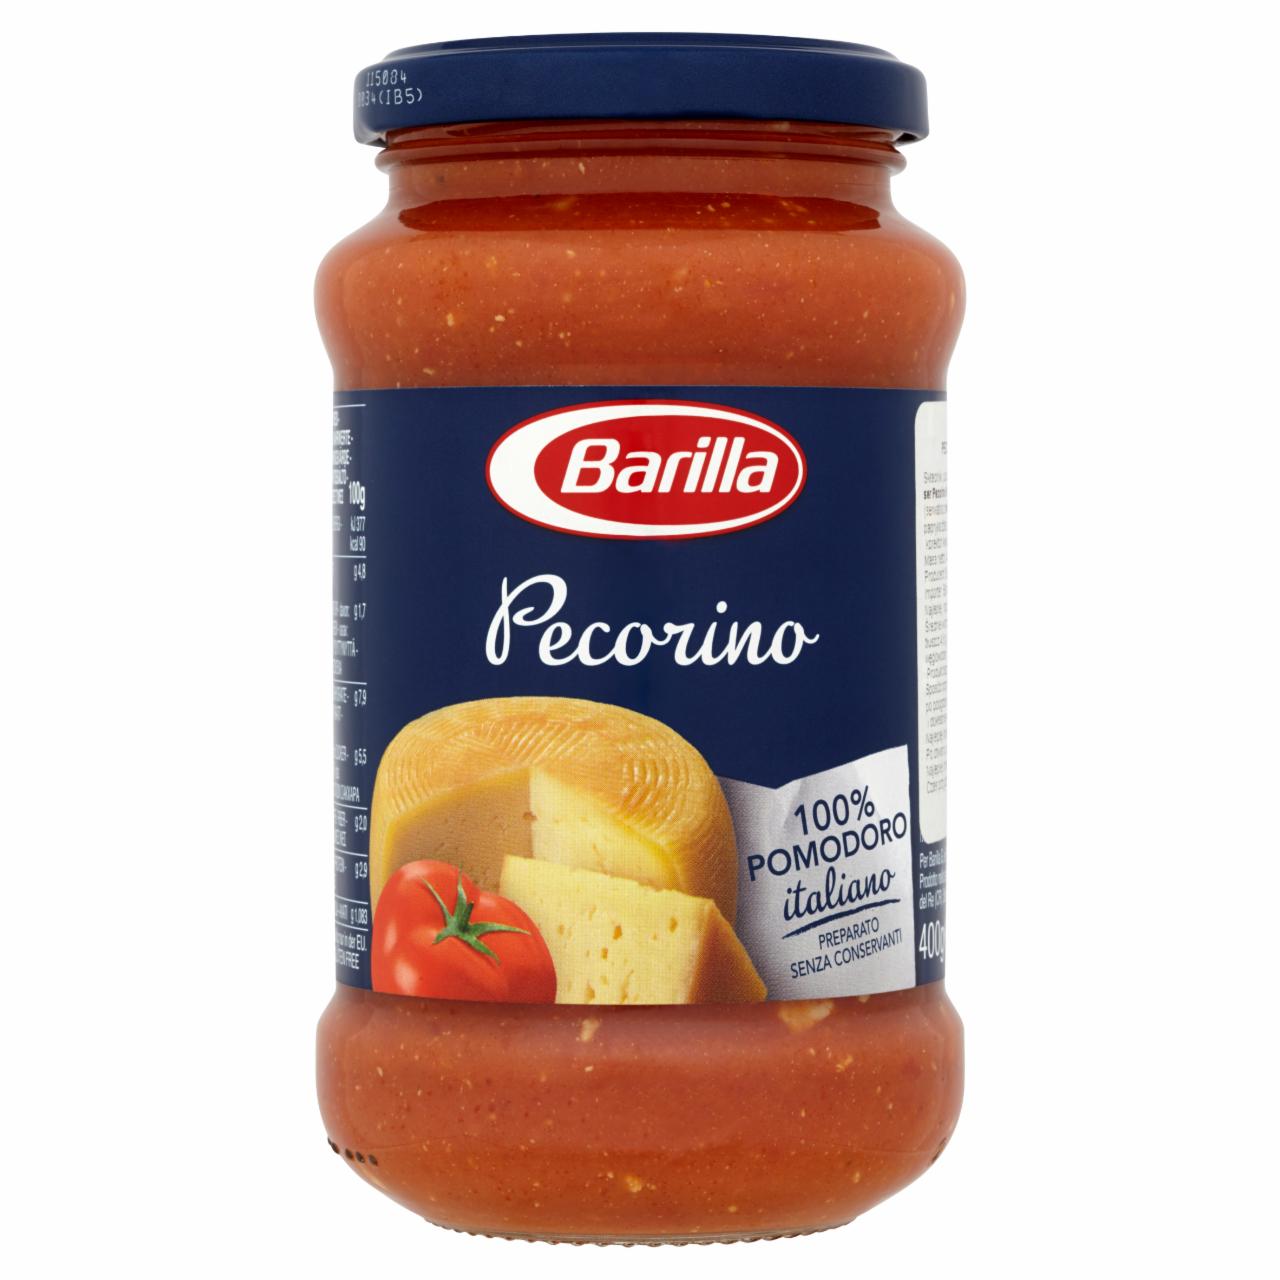 Photo - Barilla Pecorino Tomato Pasta Sauce with Pecorino Cheese 400 g